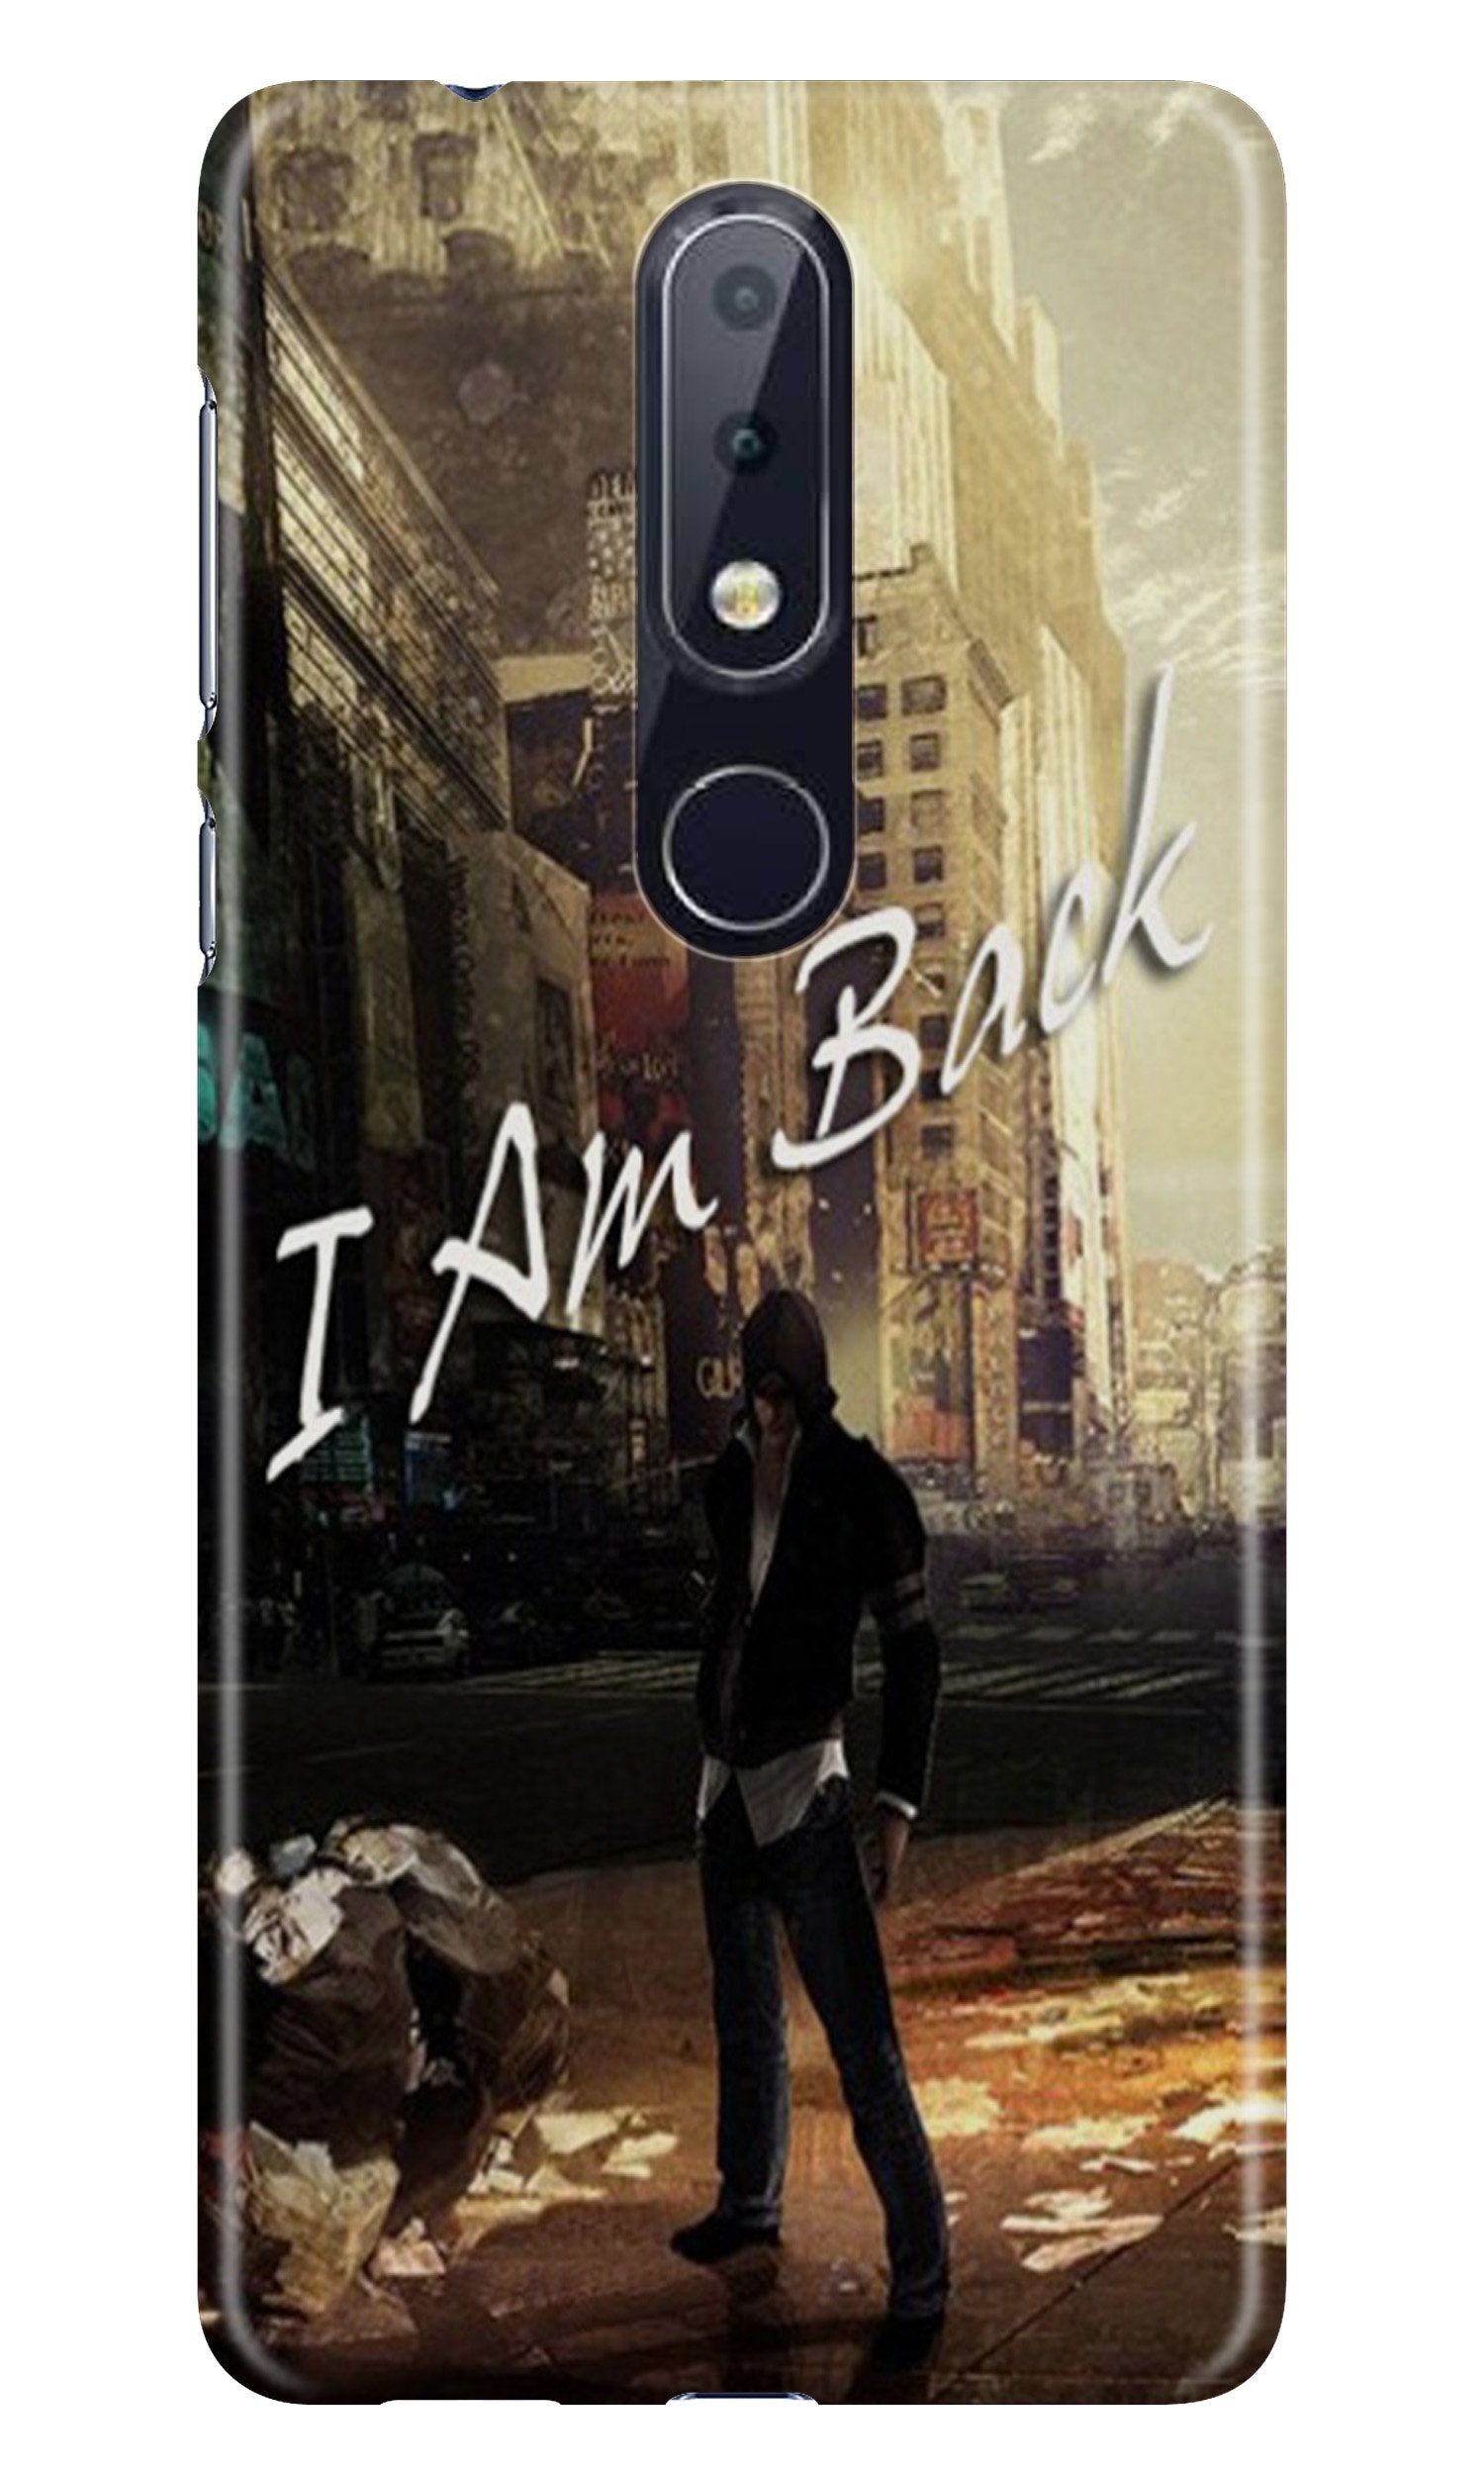 I am Back Case for Nokia 6.1 Plus (Design No. 296)